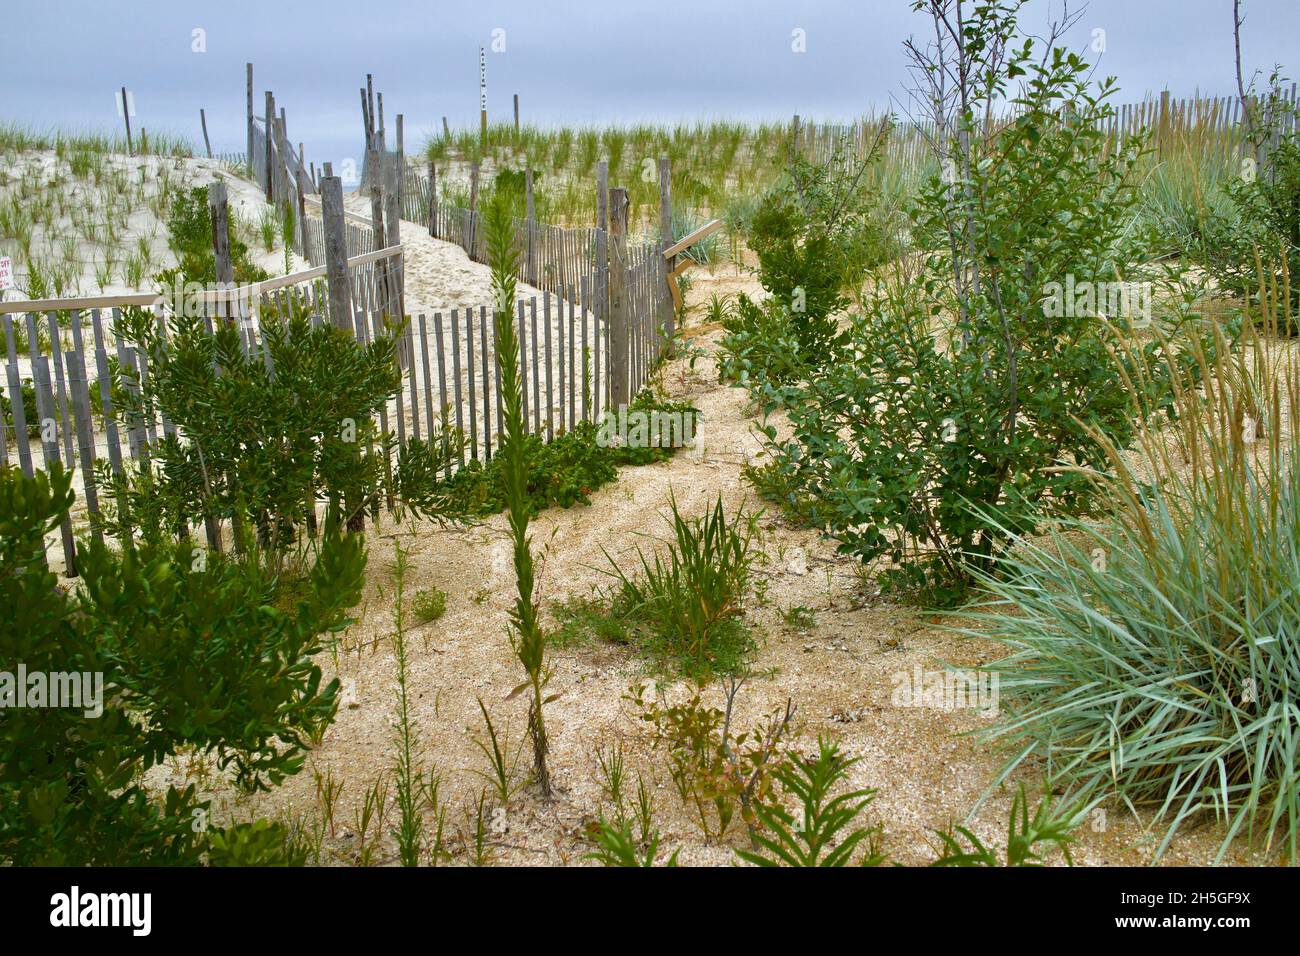 Wooden Beach oder Dune Fence schützt die Düne in Long Beach Island, NJ, USA. Dünengras und andere einheimische Pflanzen wachsen im Sand. Stockfoto